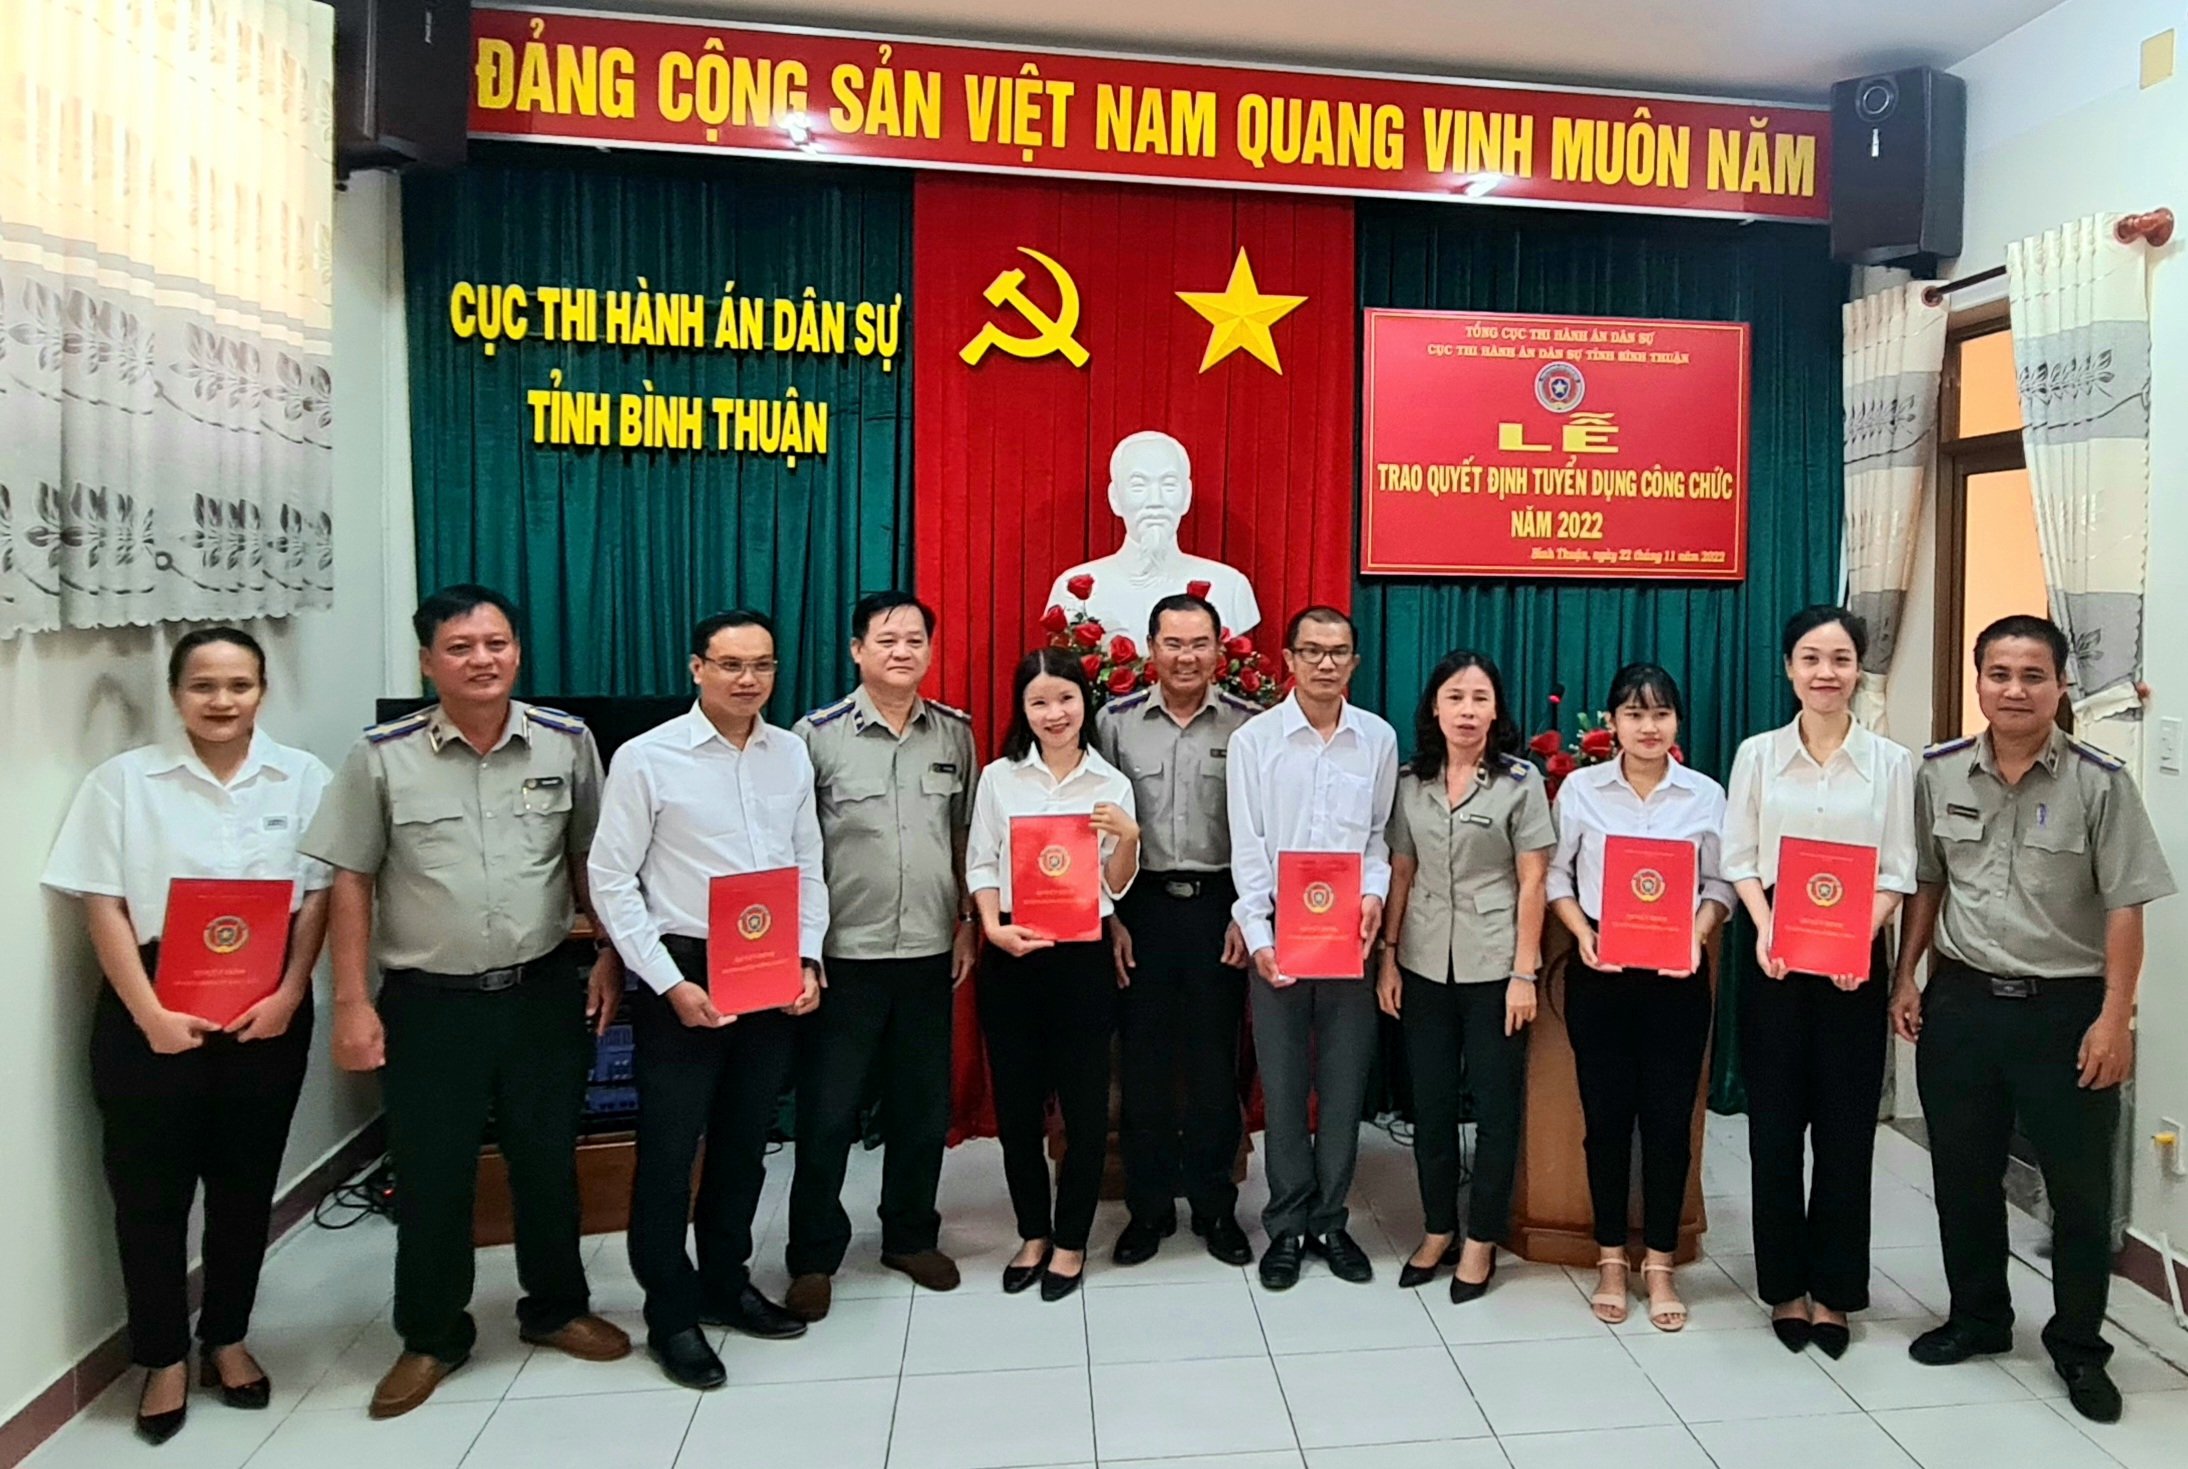 Cục Thi hành án dân sự tỉnh Bình Thuận tổ chức Lễ trao các Quyết định tuyển dụng công chức năm 2022.